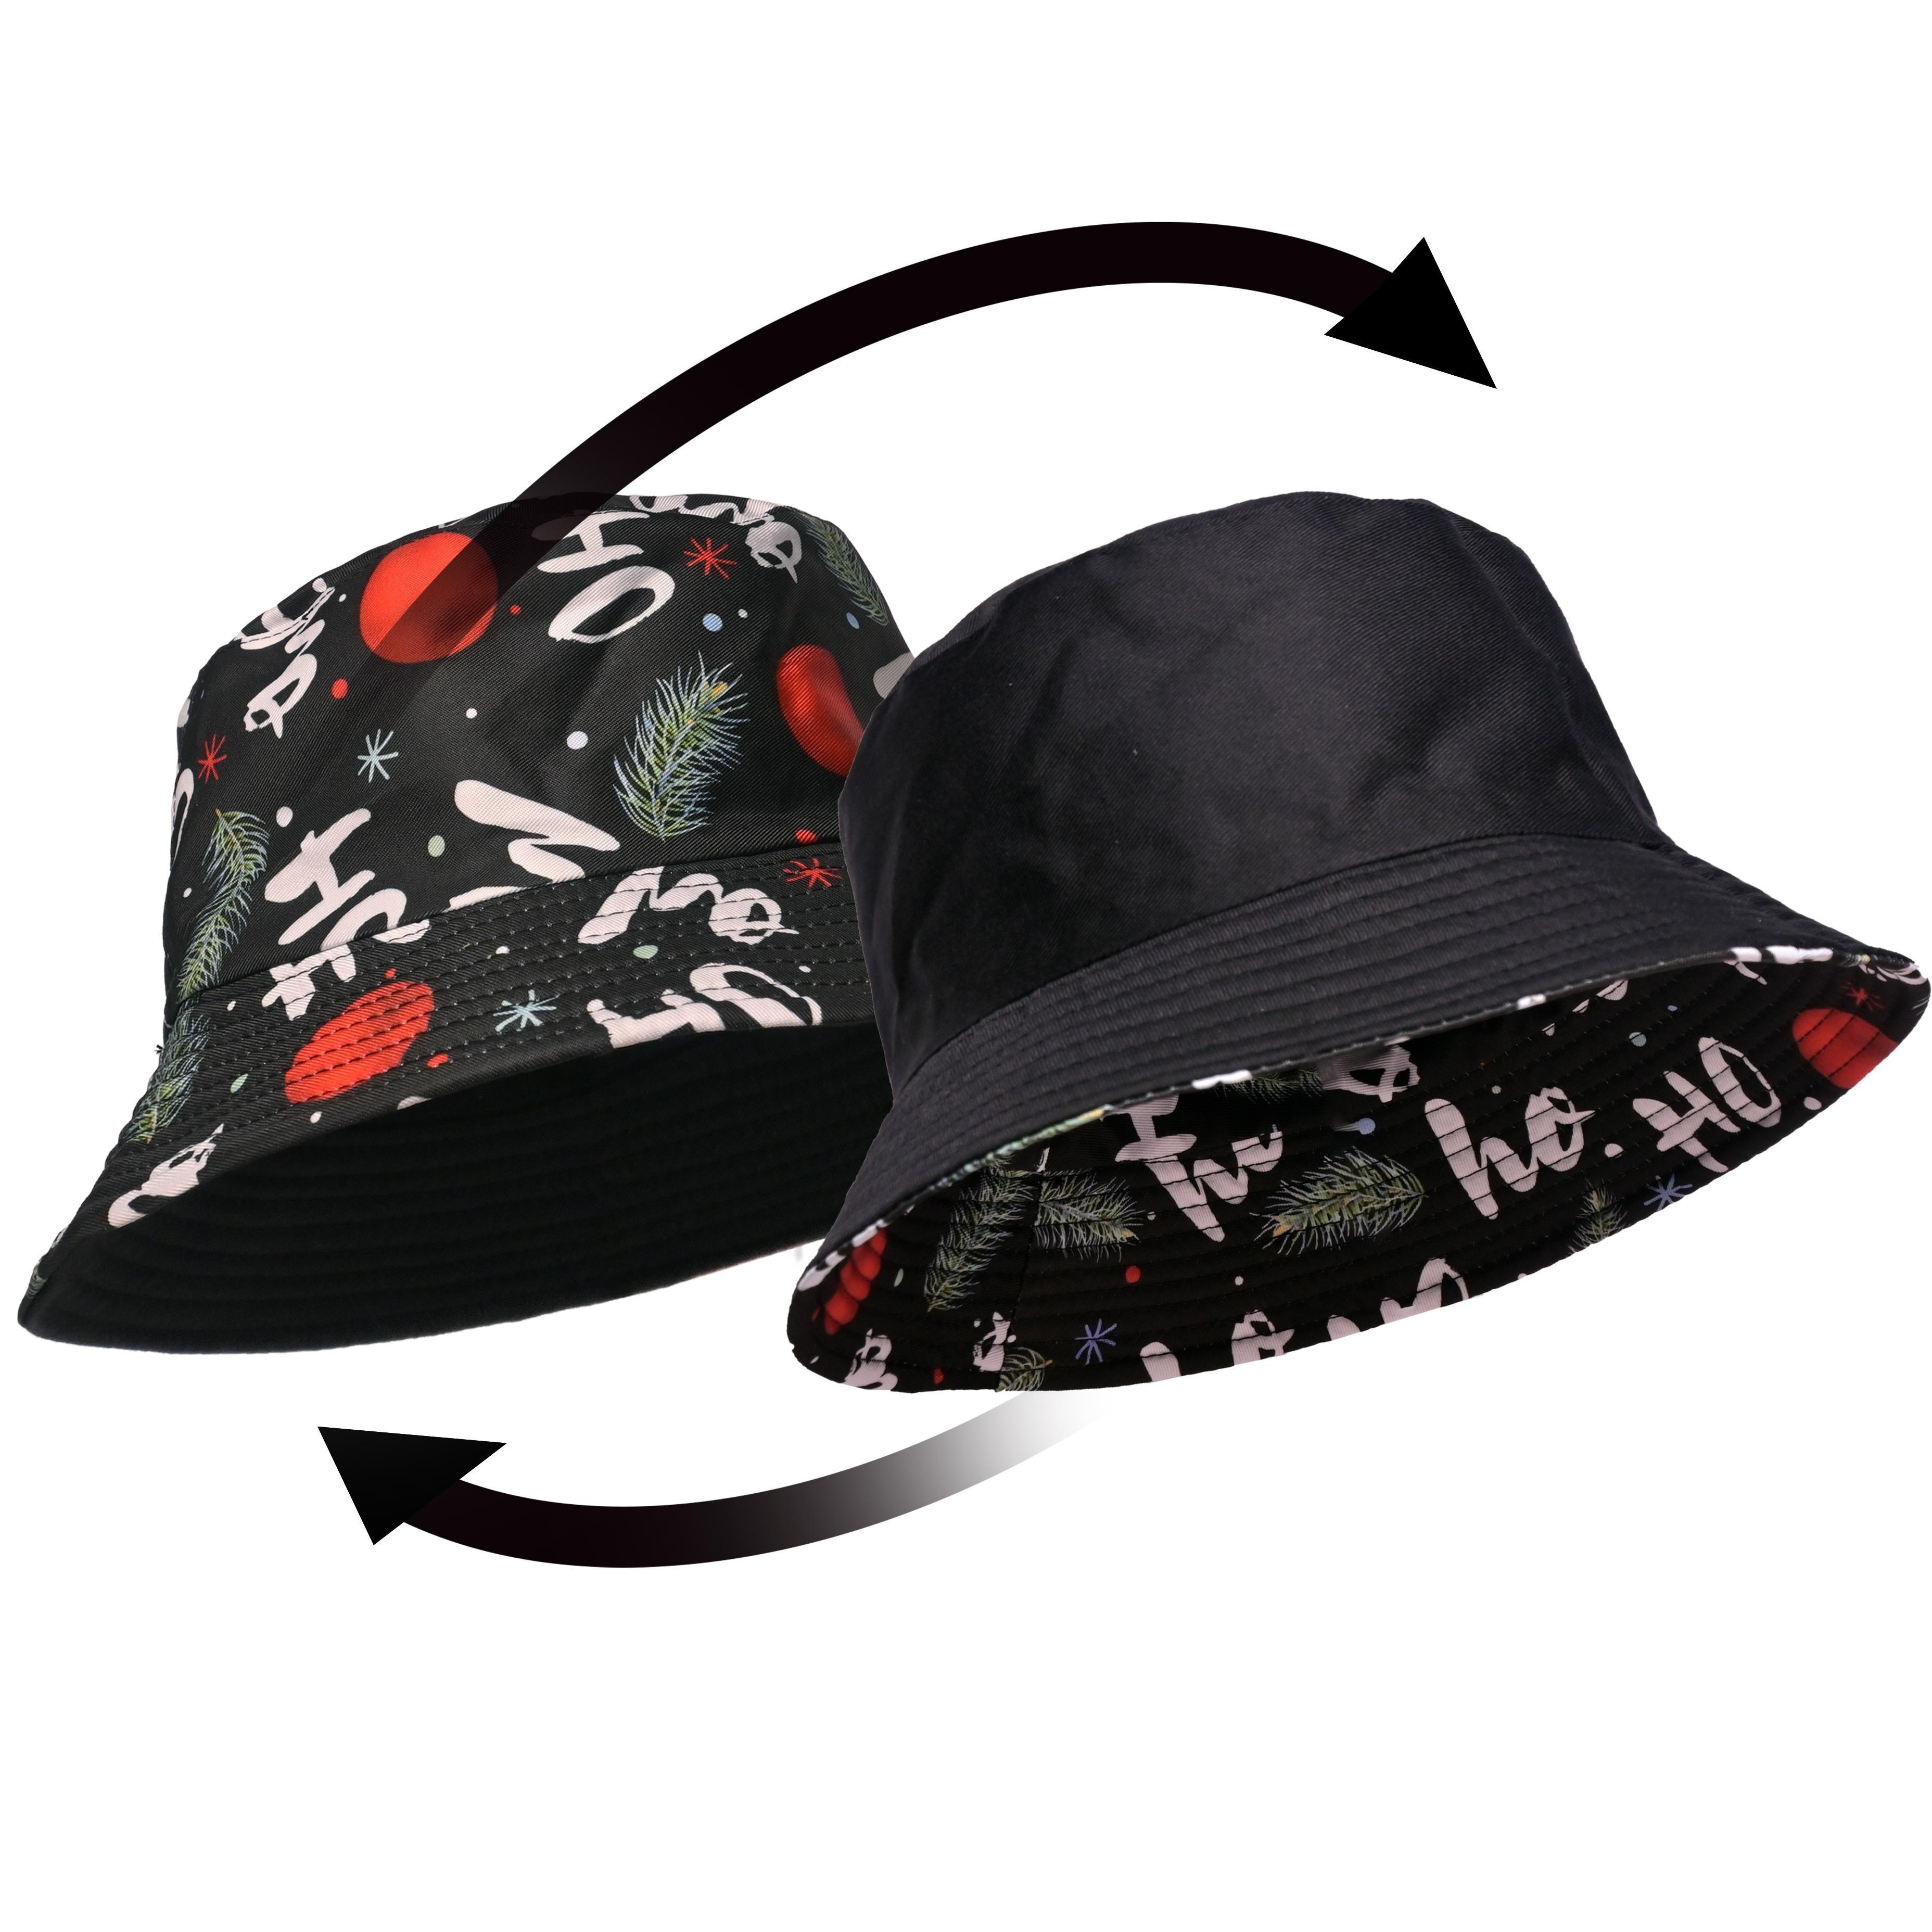 Mbti Type Printed Bucket Hat Stylish Casual Fisherman - Temu United Kingdom